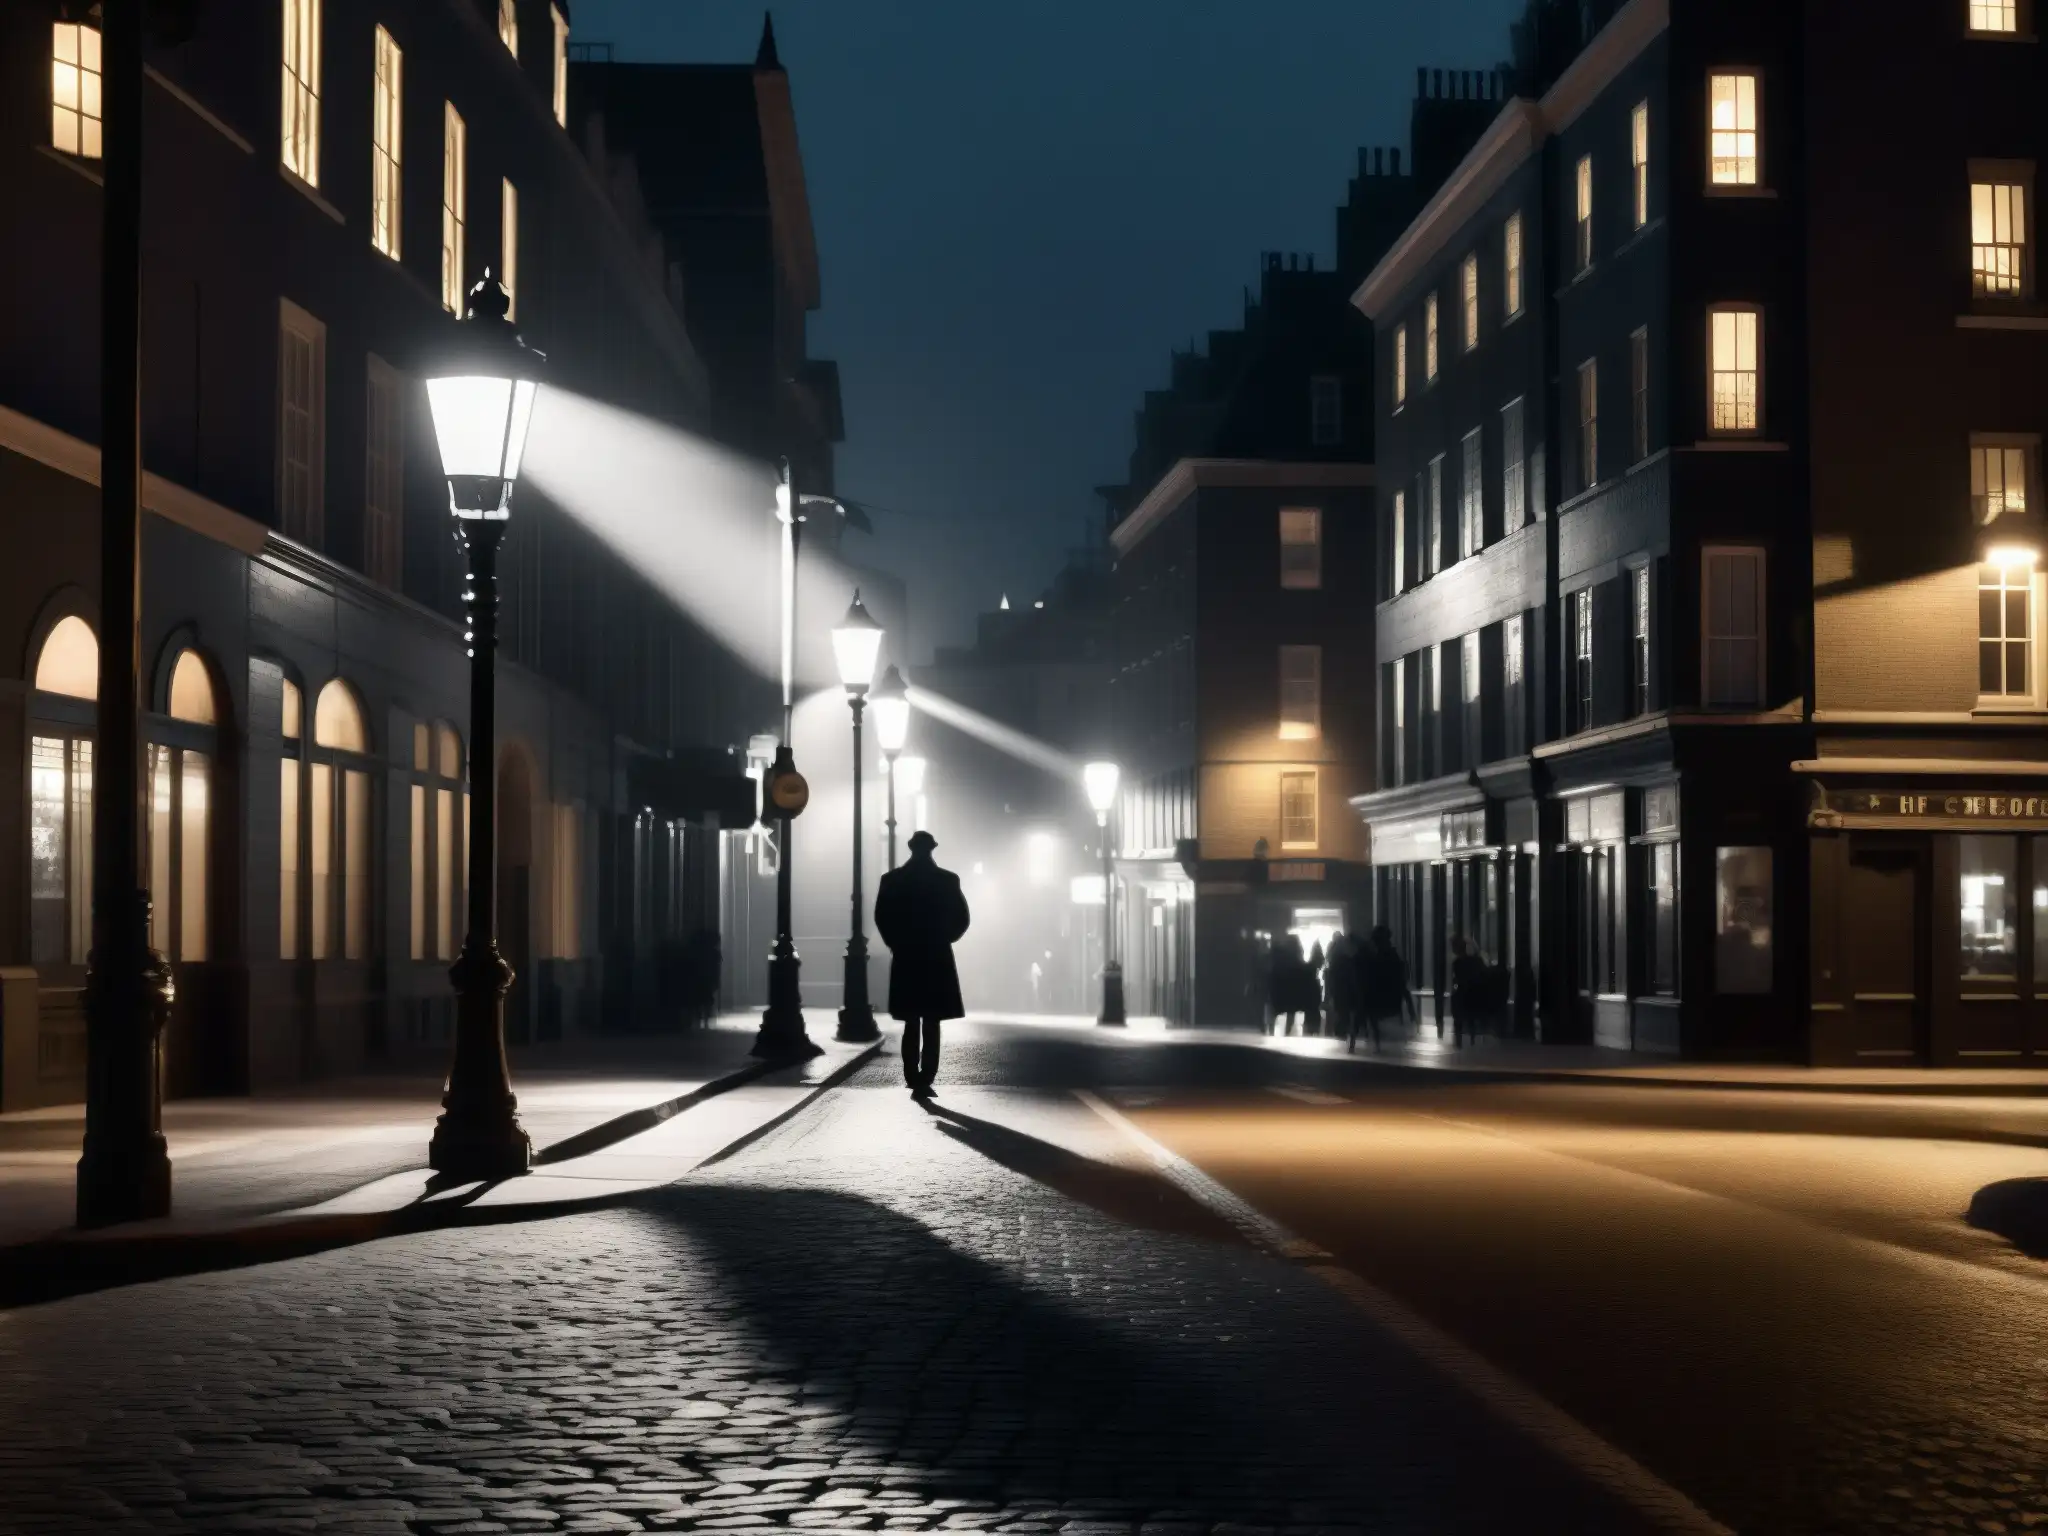 Foto en blanco y negro de una calle urbana tenue en la noche, con una figura en la distancia y una farola parpadeante